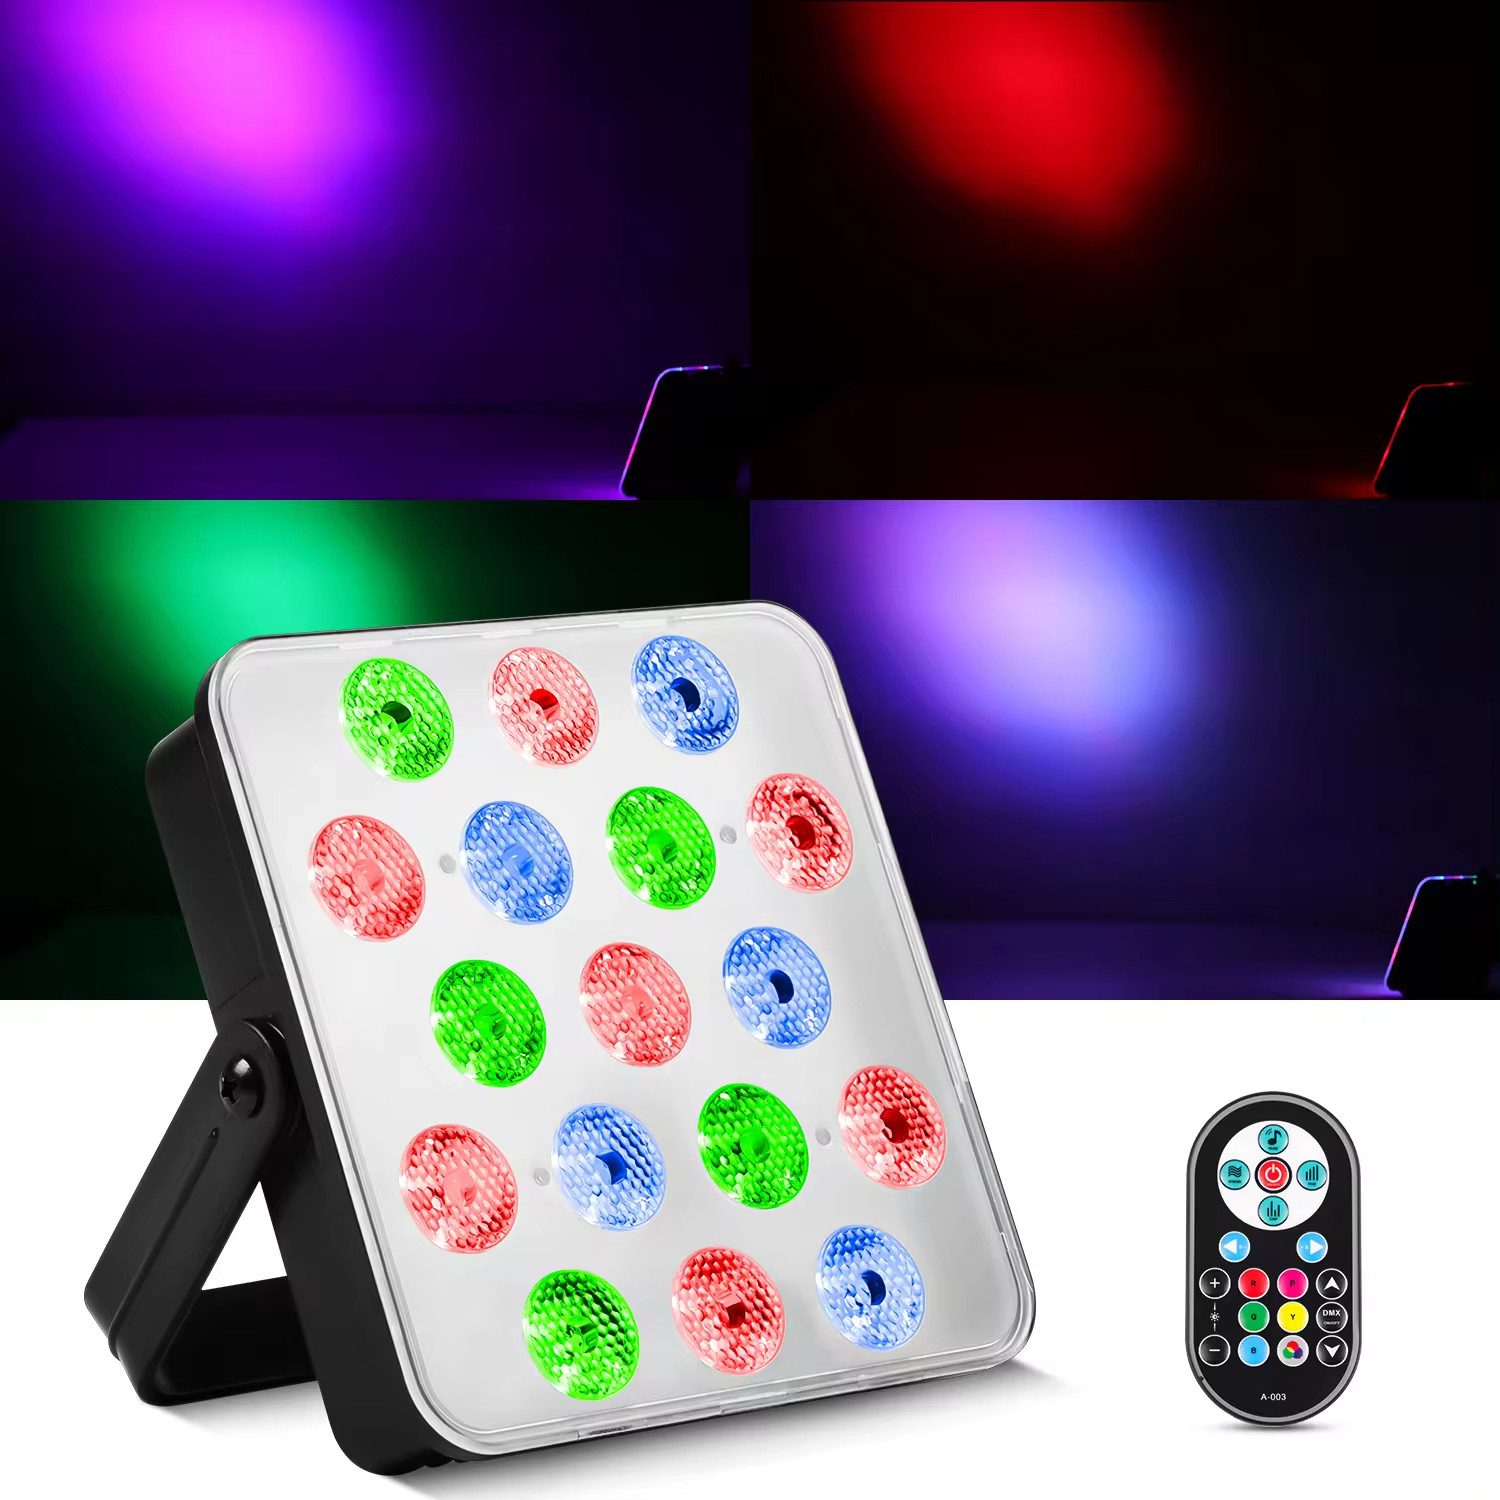 GOOLOO LED Discolicht Partylicht, Led Strahler DJ Licht Party Beleuchtungen LED, LED-Bühnenbeleuchtung Tonsteuerung sieben Farben 10W, 17 Lichtperlen